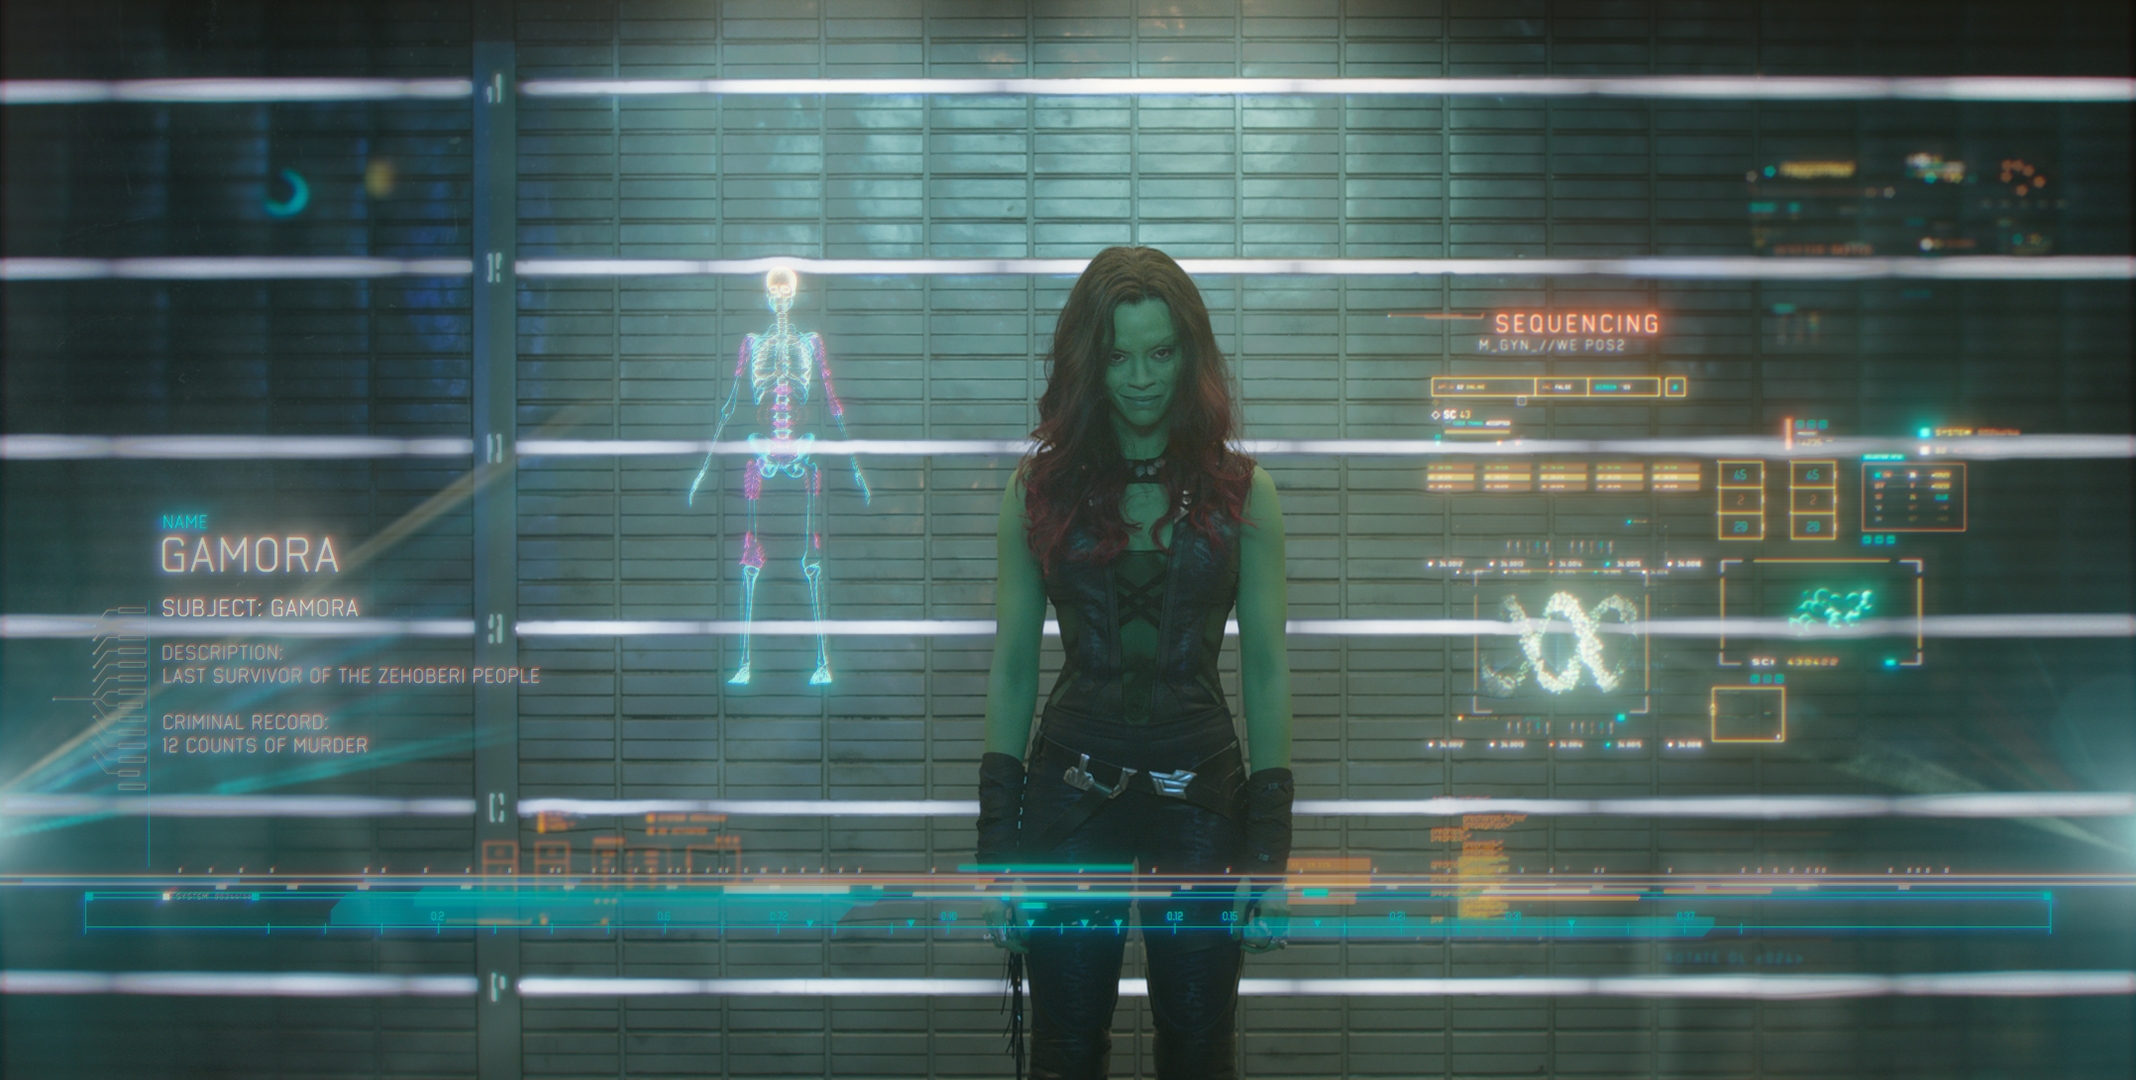 Trong phần đầu tiên của Vệ Binh Dải Ngân Hà, khi Gamora chuẩn bị vào tù cùng Sao Chúa và các bạn, cô và mọi người phải đi qua một thiết bị thể hiện thông tin cá nhân của từng người.